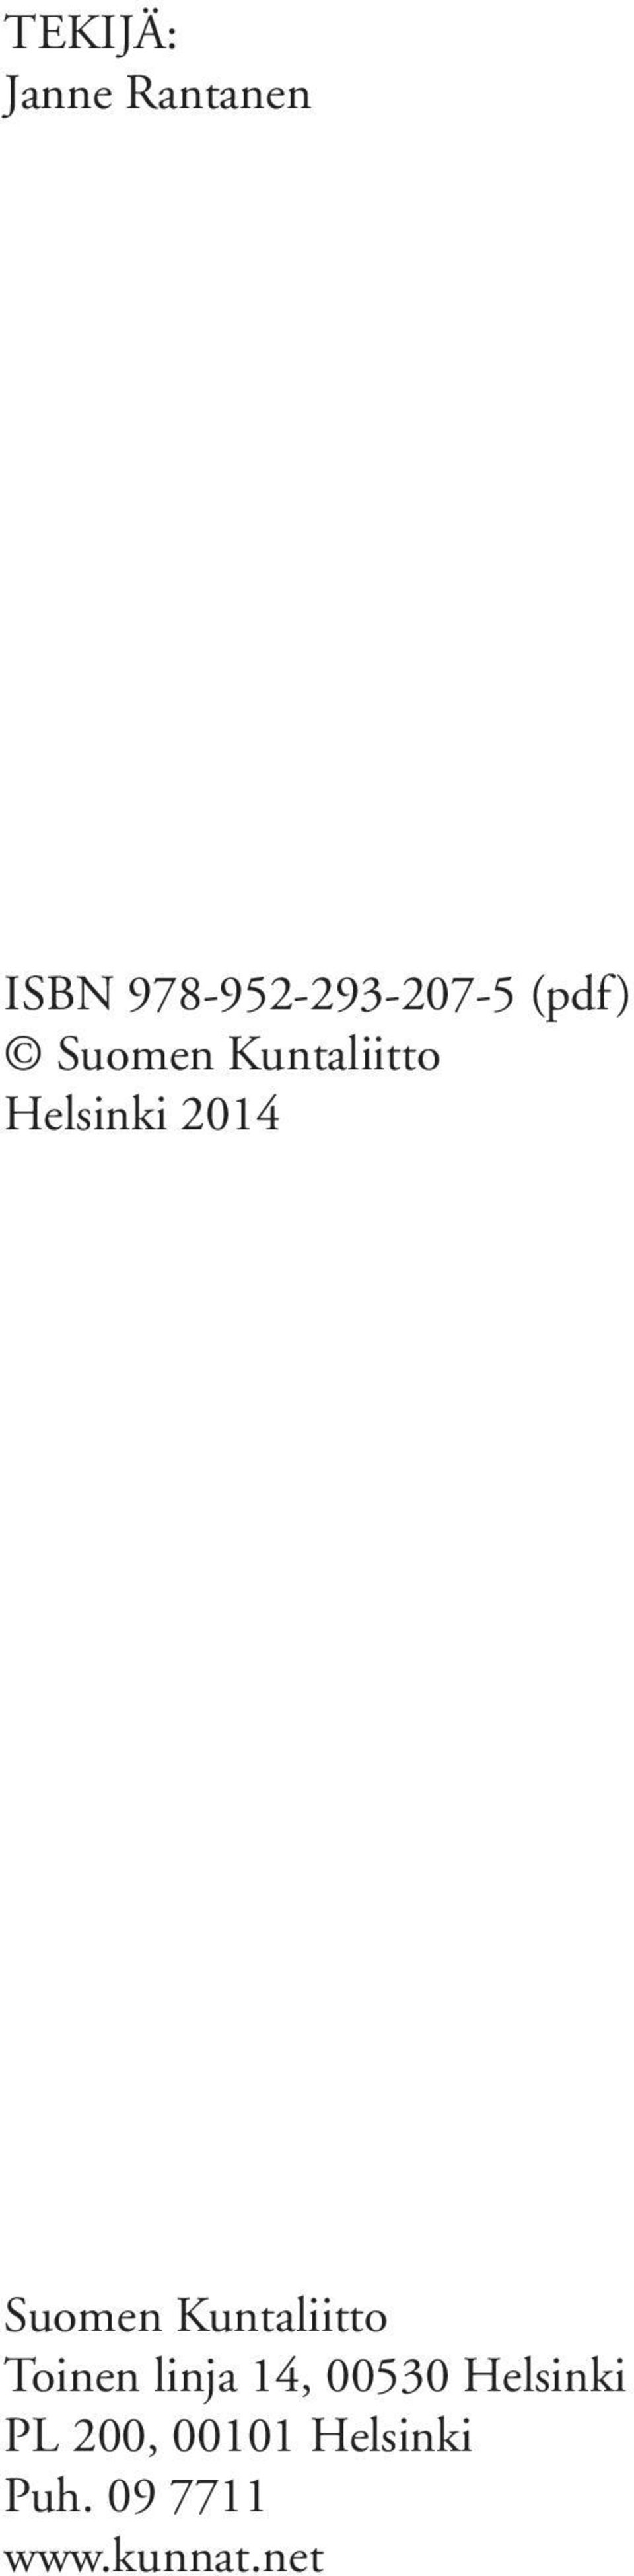 Kuntaliitto Toinen linja 14, 00530 Helsinki PL